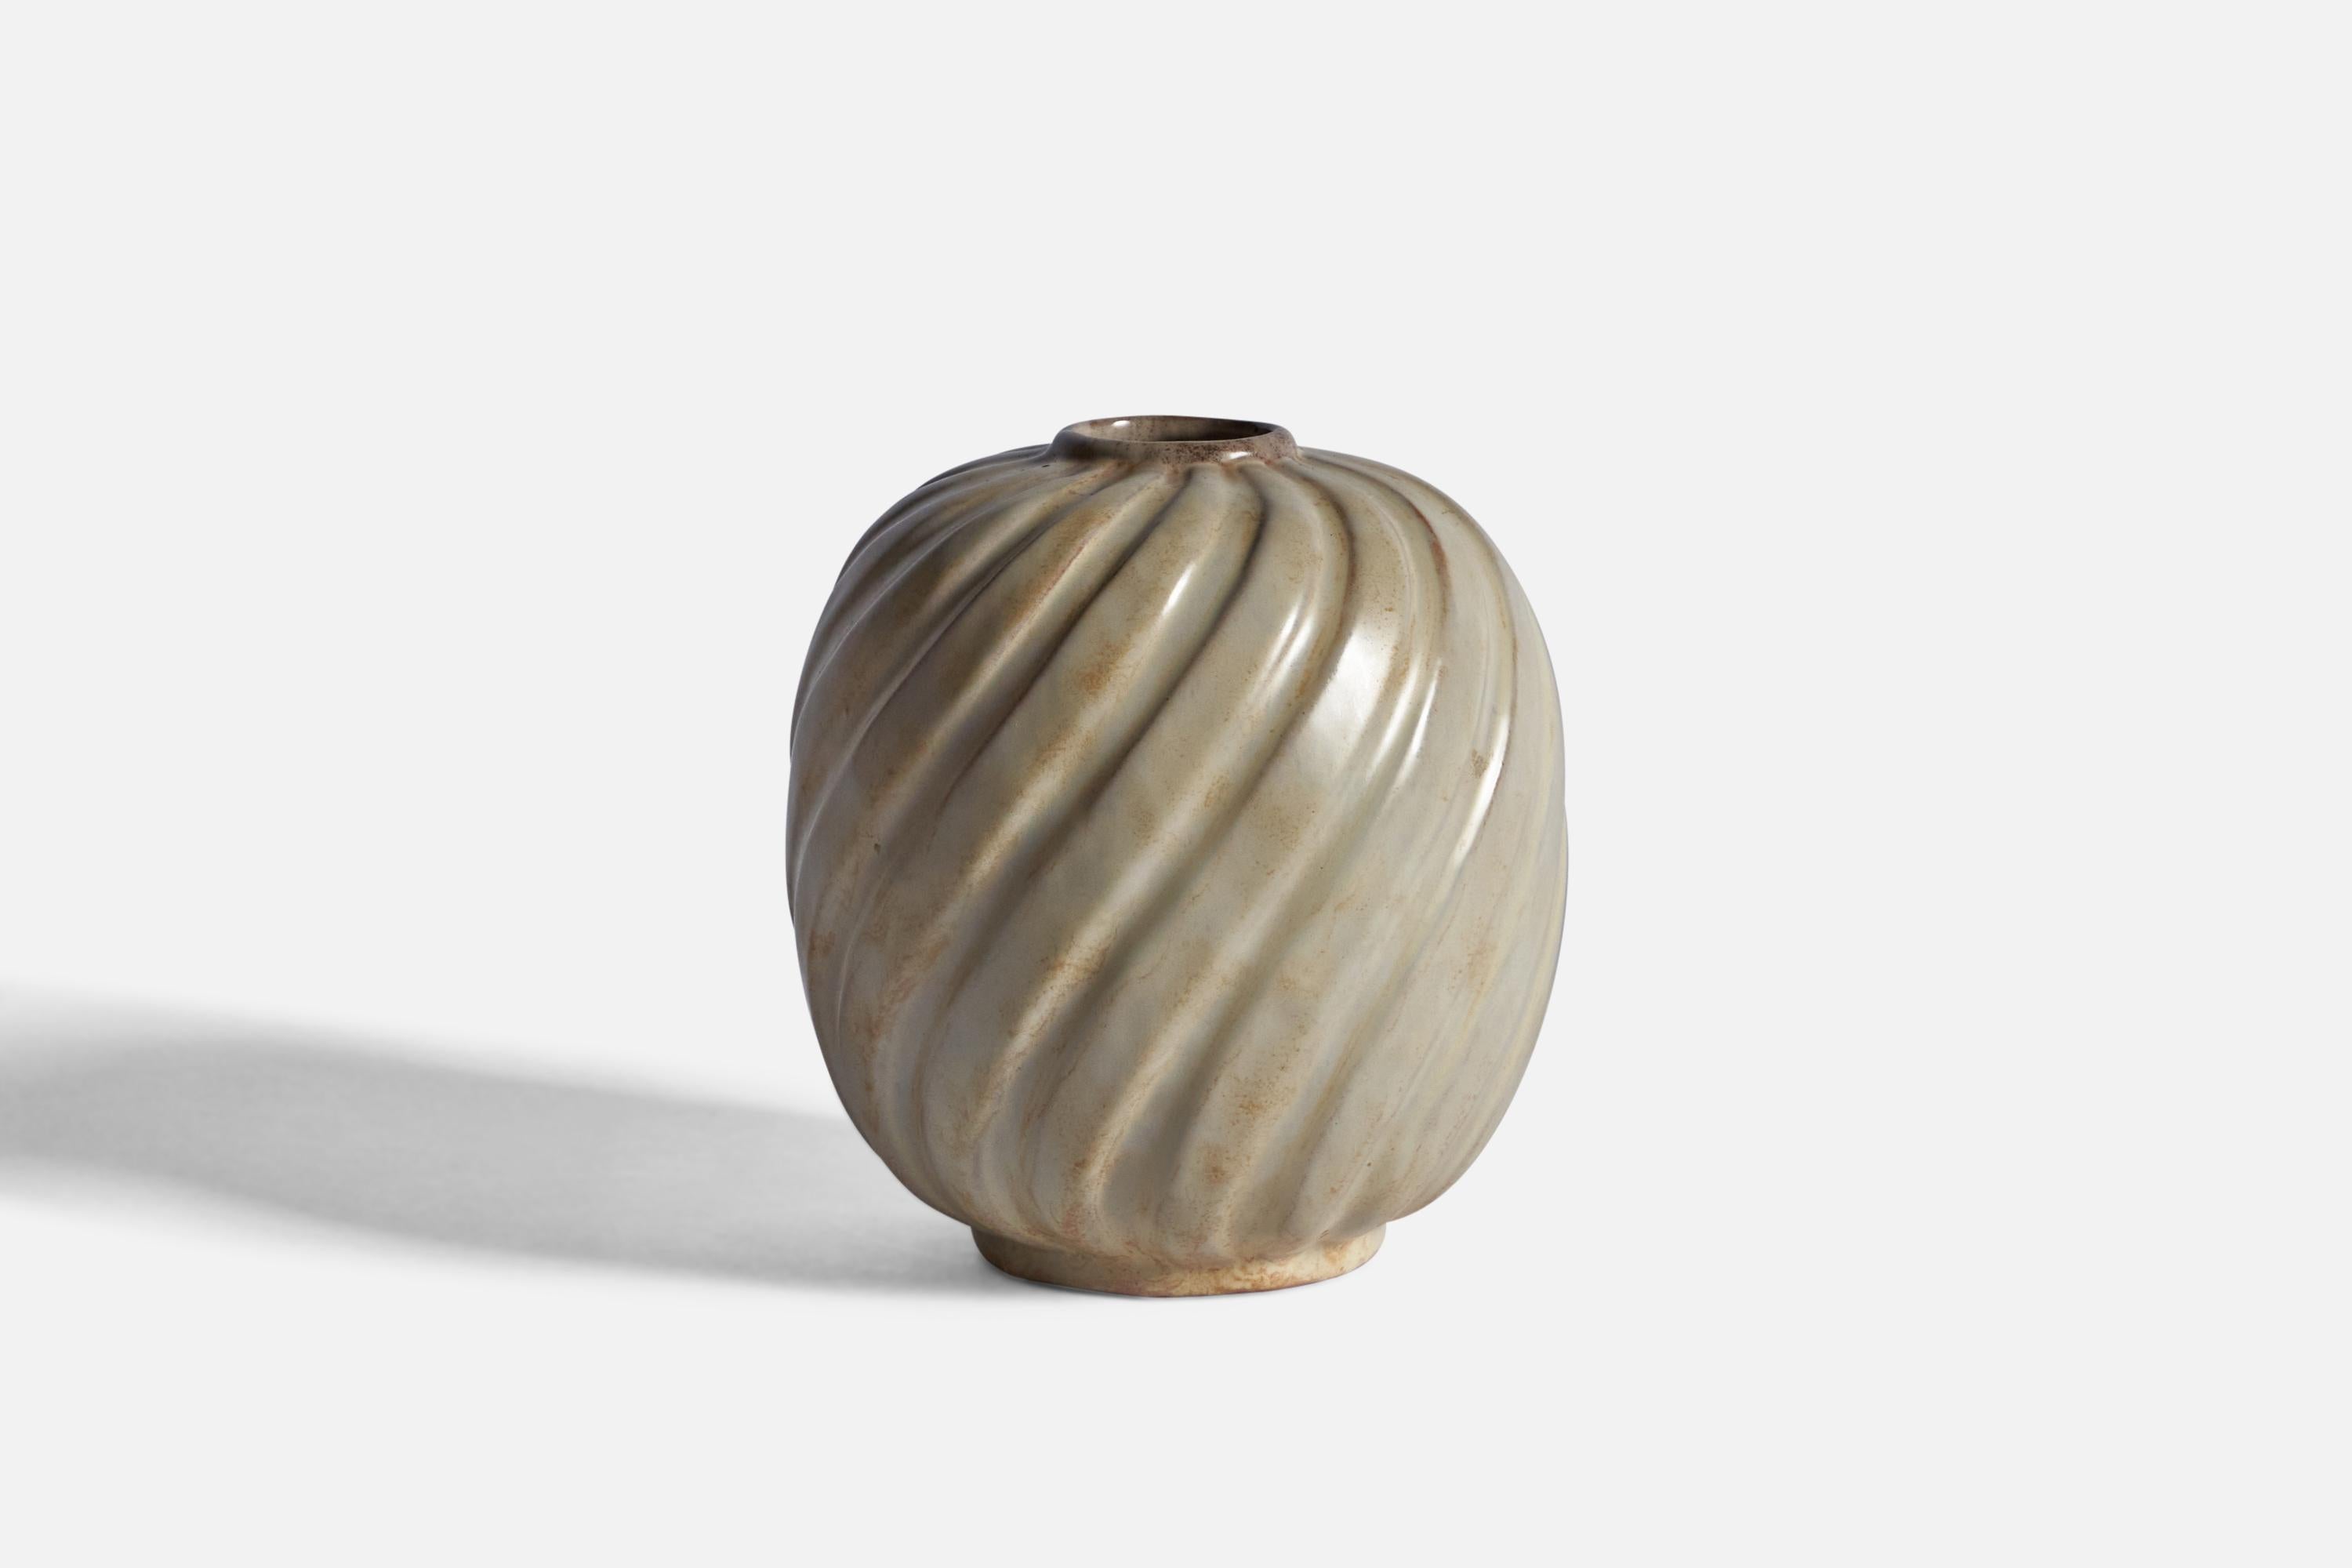 A grey-glazed fluted stoneware vase designed and produced by Upsala Ekeby, Sweden c. 1930s.